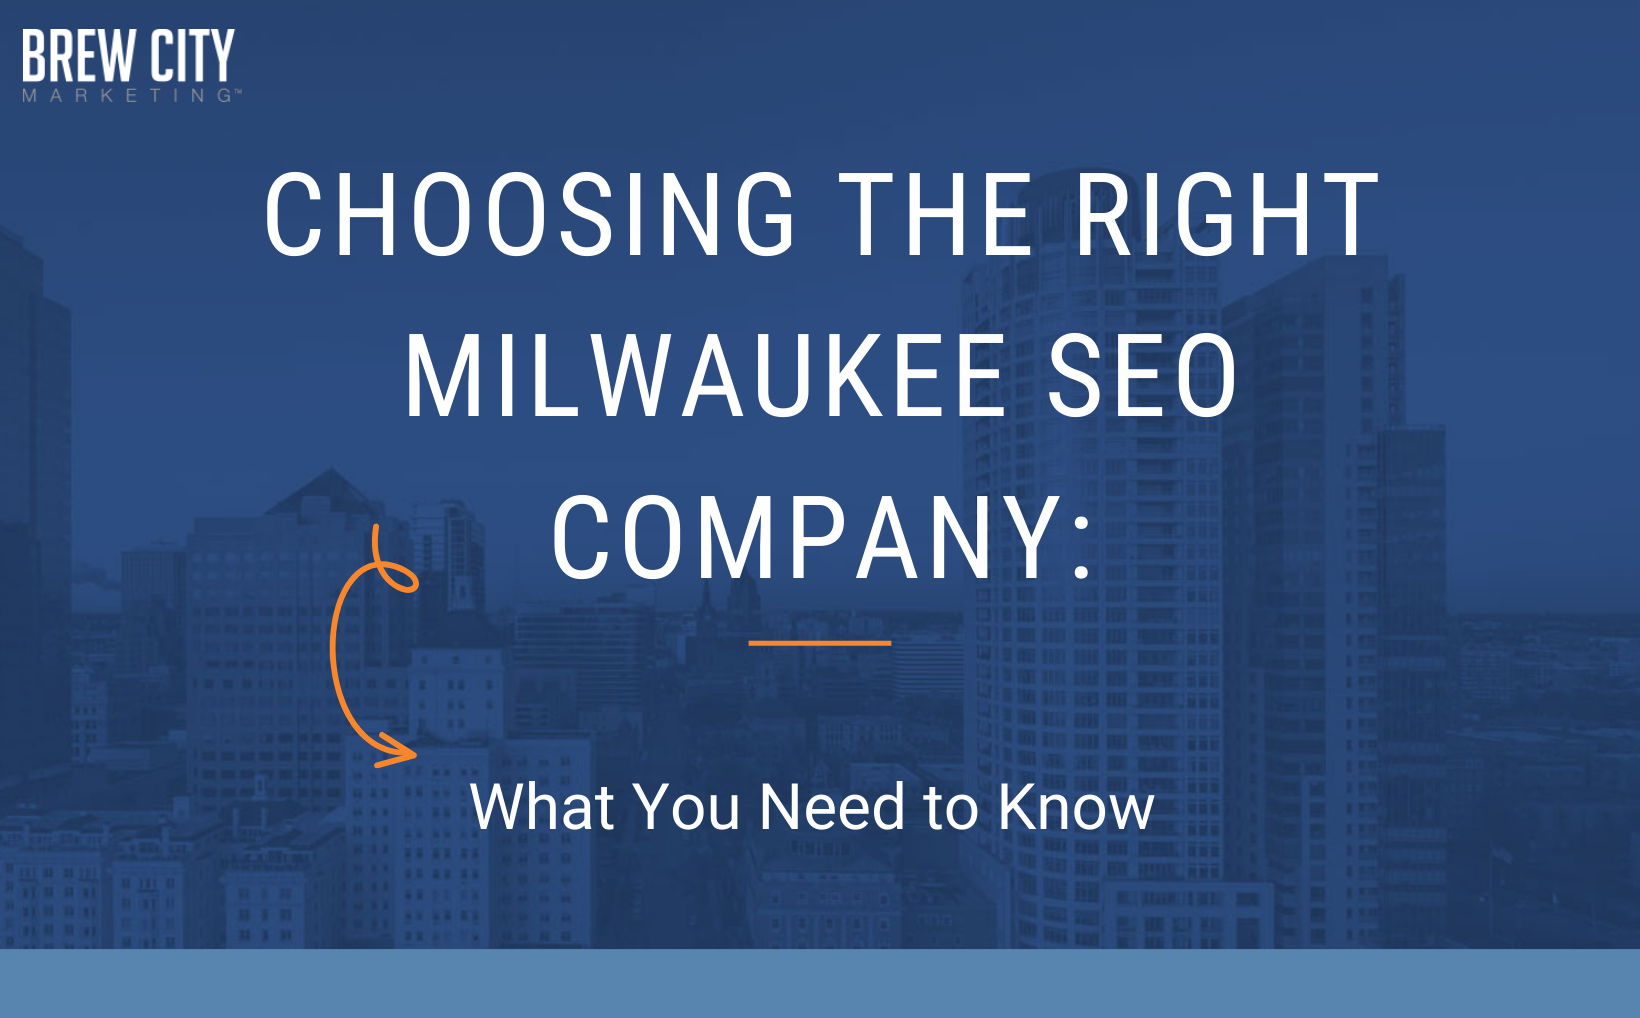 Choosing the right Milwaukee SEO company